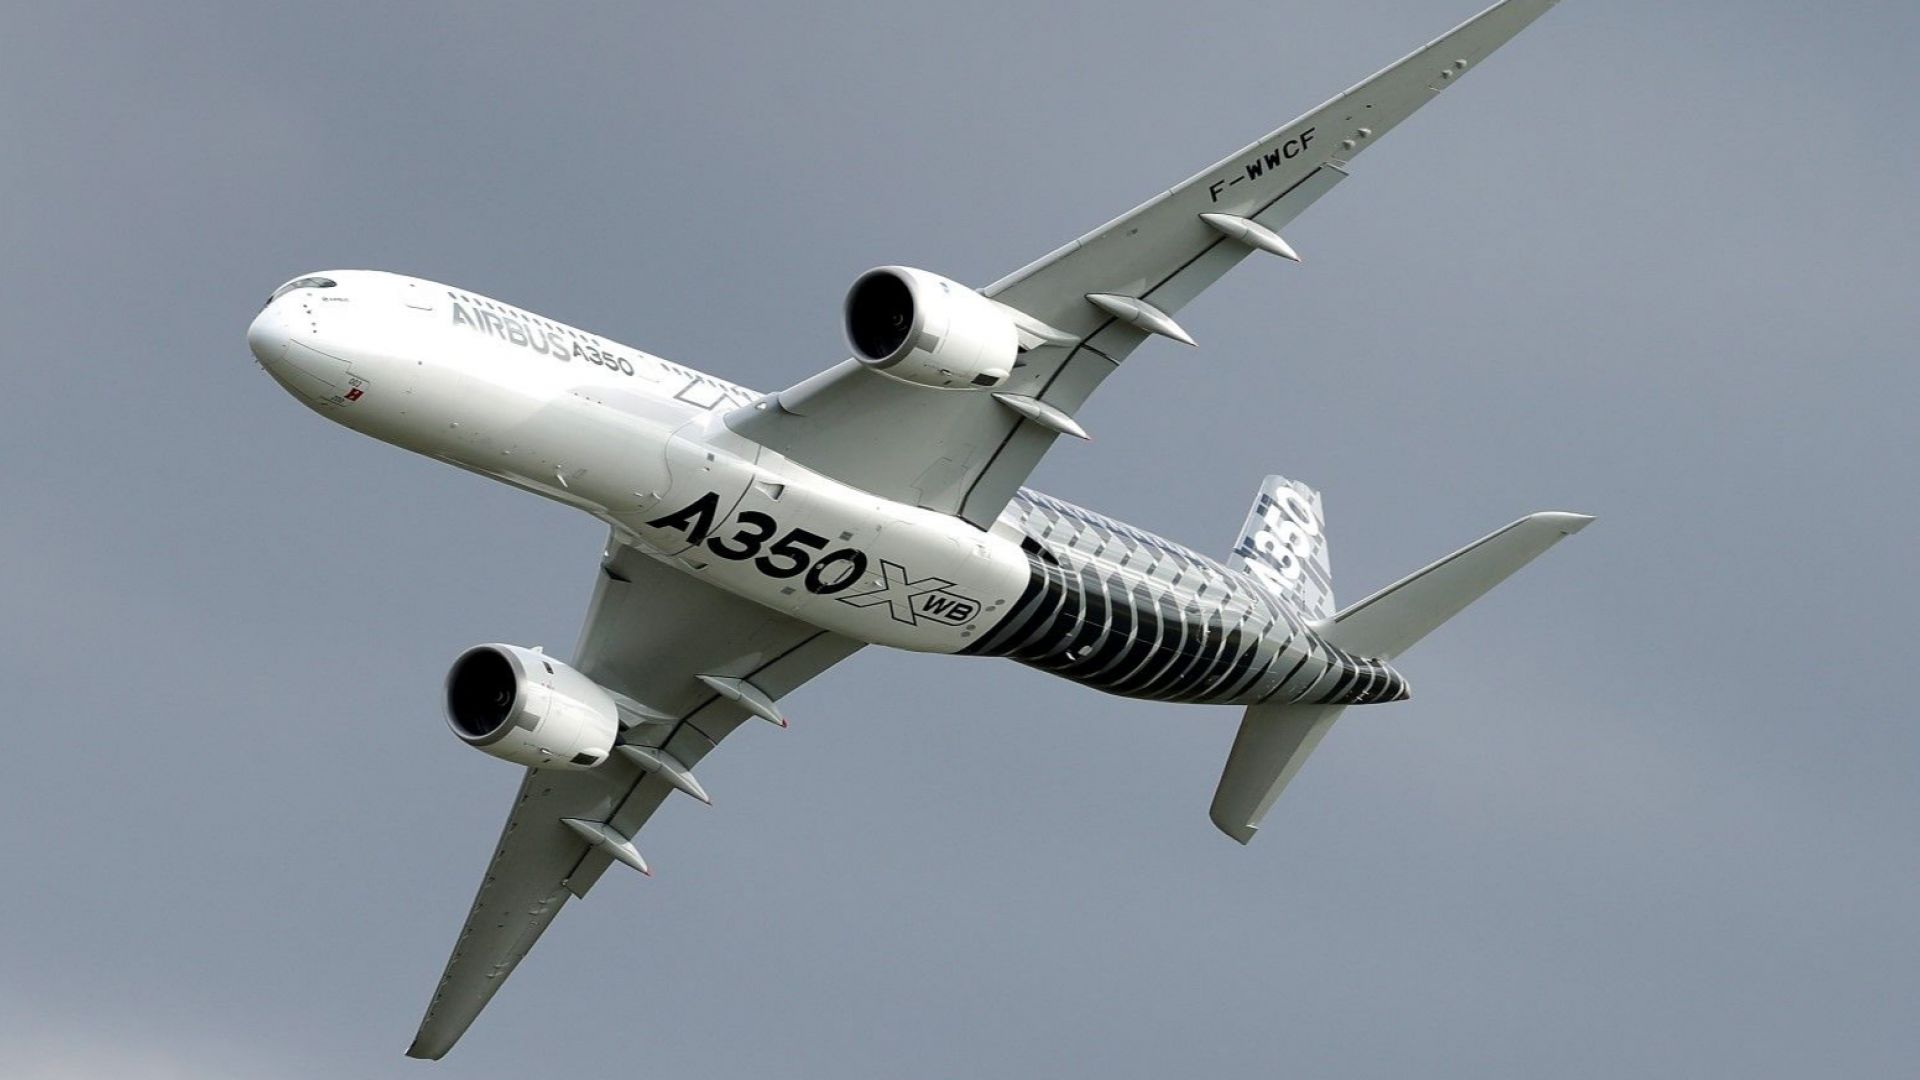 Еърбъс Airbus уволни 16 свои служители без предизвестие във връзка